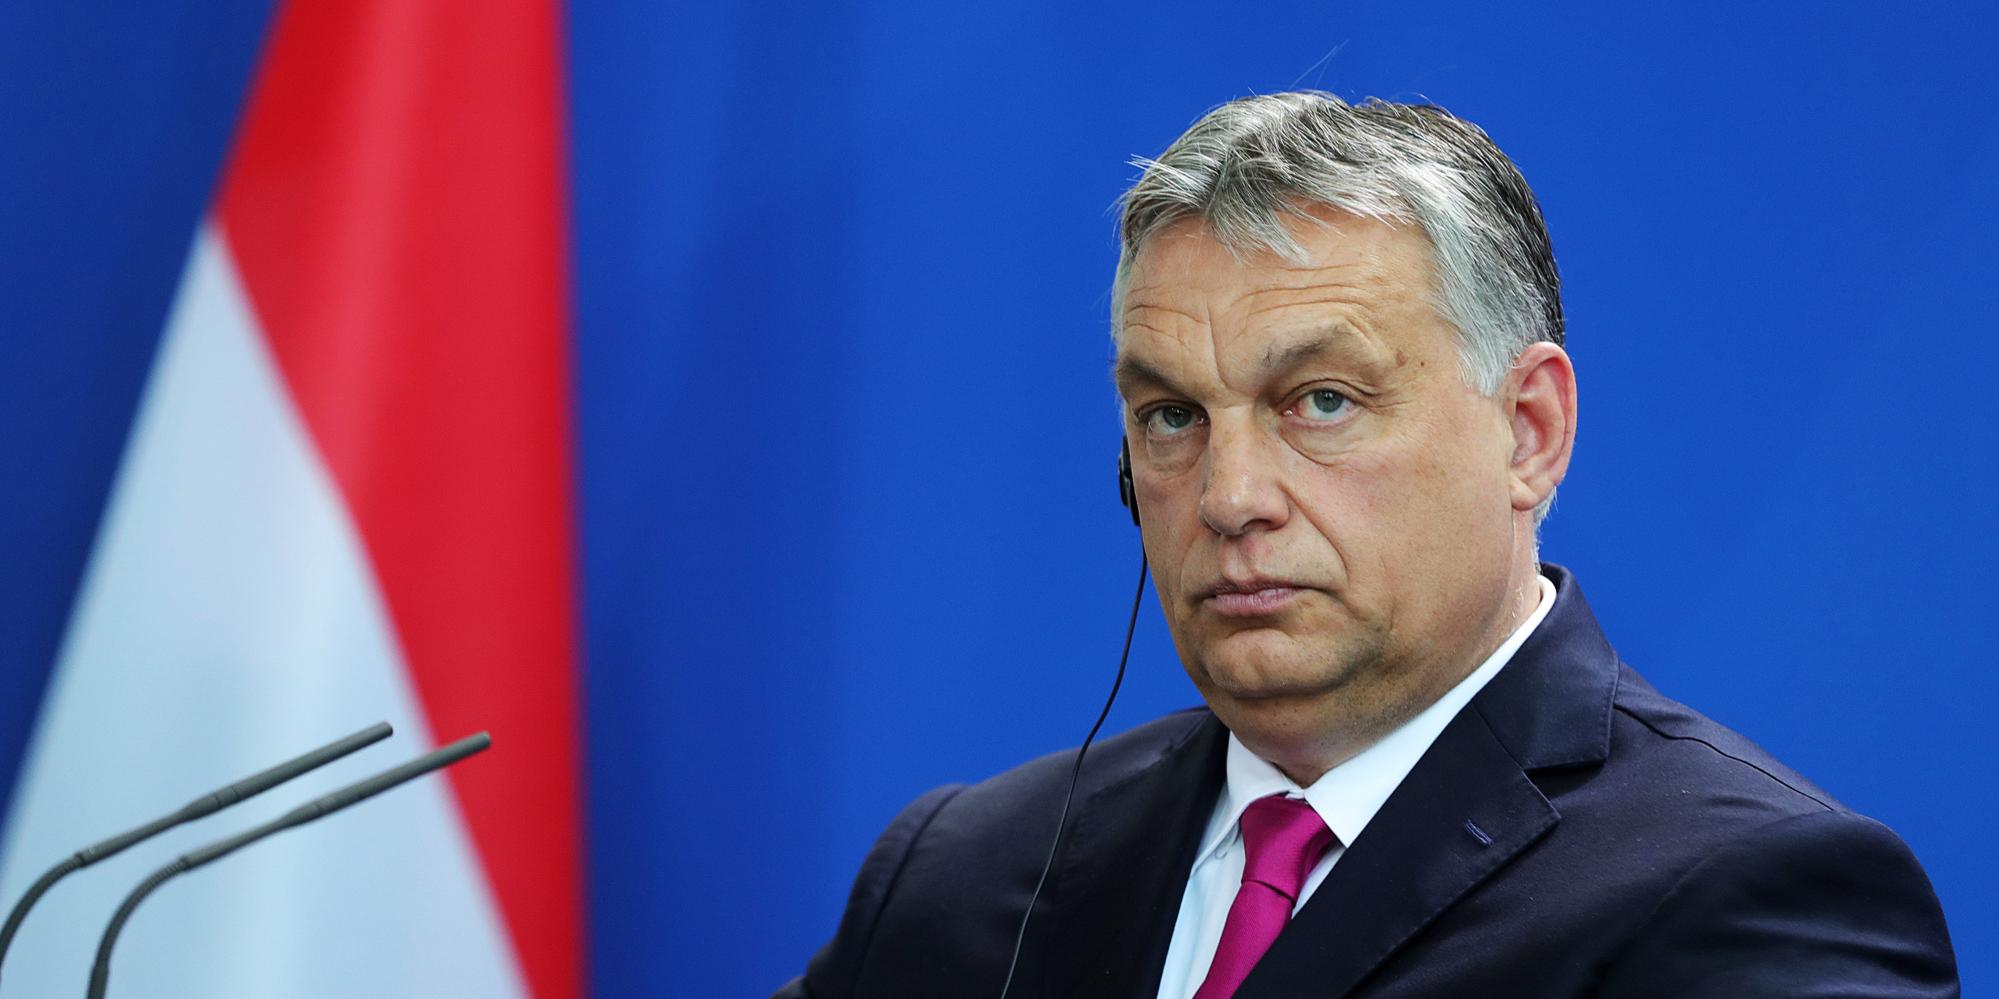 МИД Украины отреагировал на антиукраинские высказывания венгерского премьера Виктора Орбана